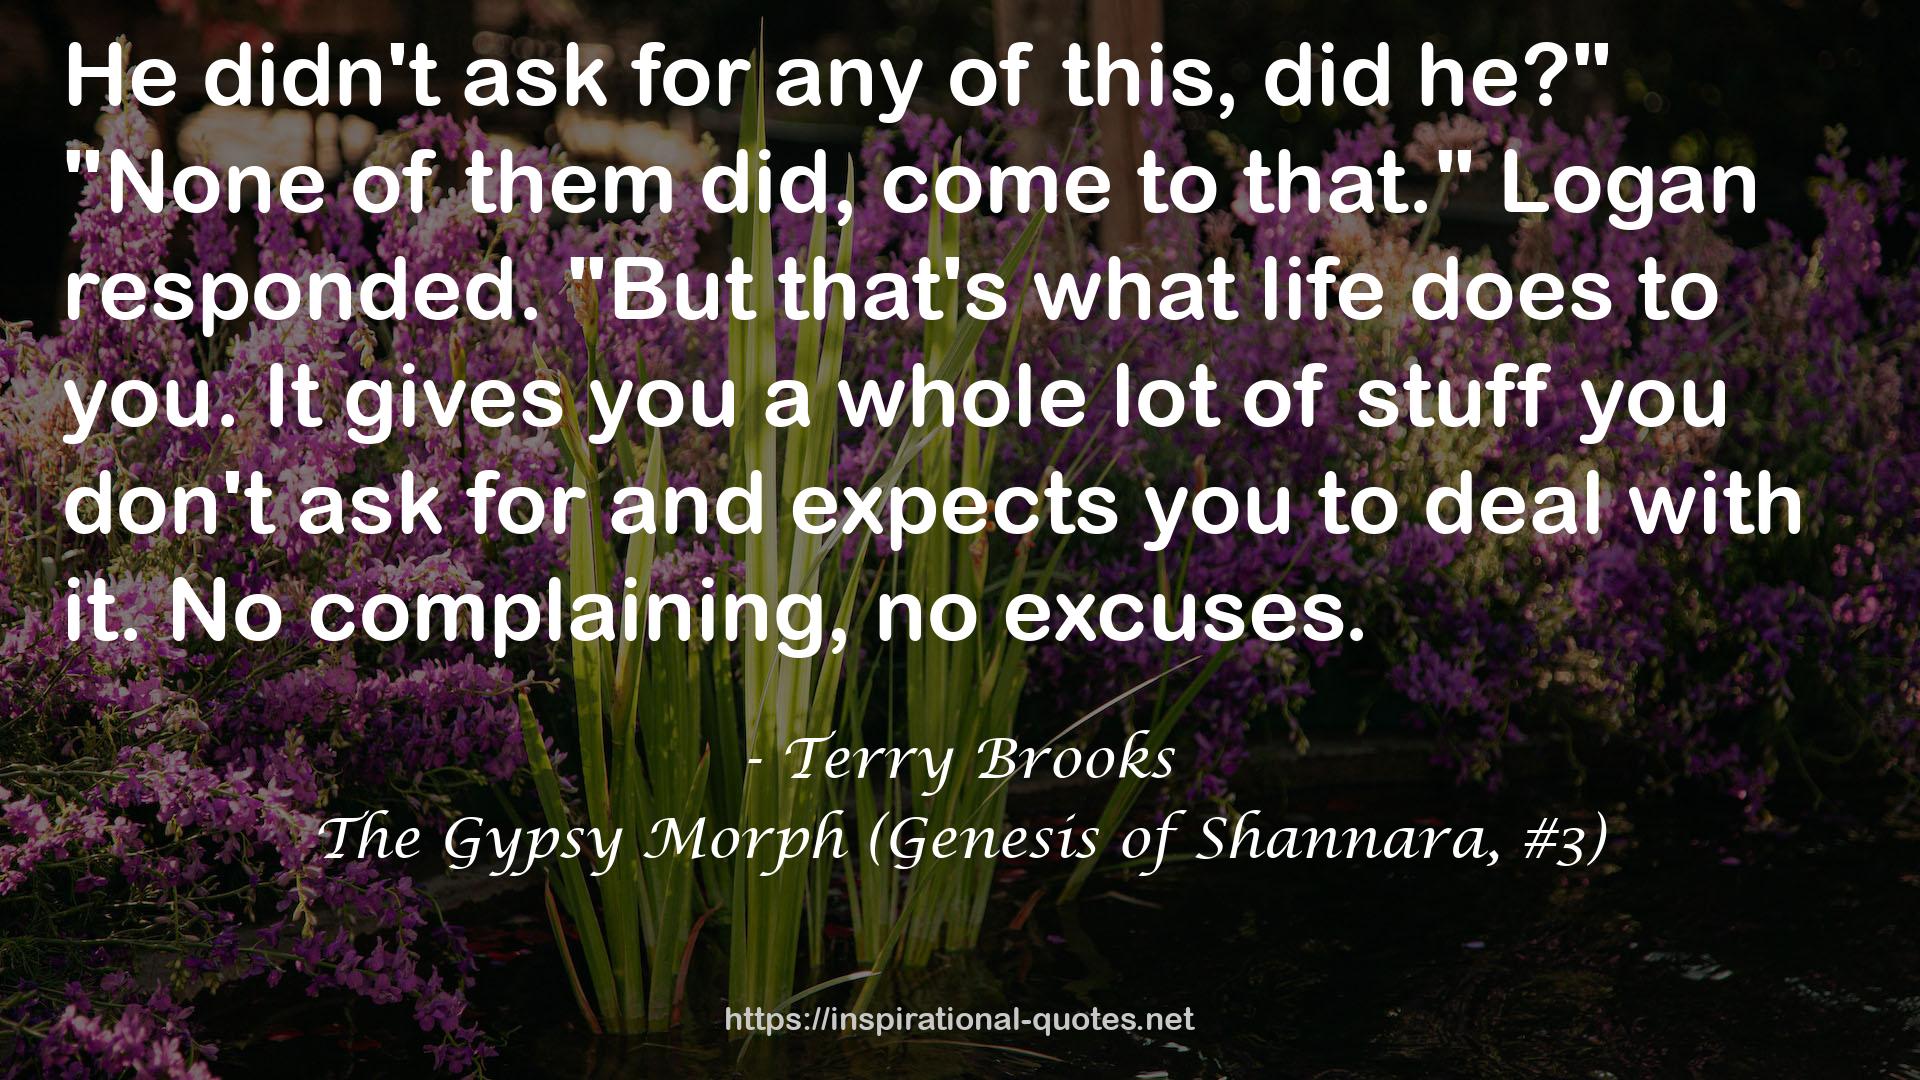 The Gypsy Morph (Genesis of Shannara, #3) QUOTES